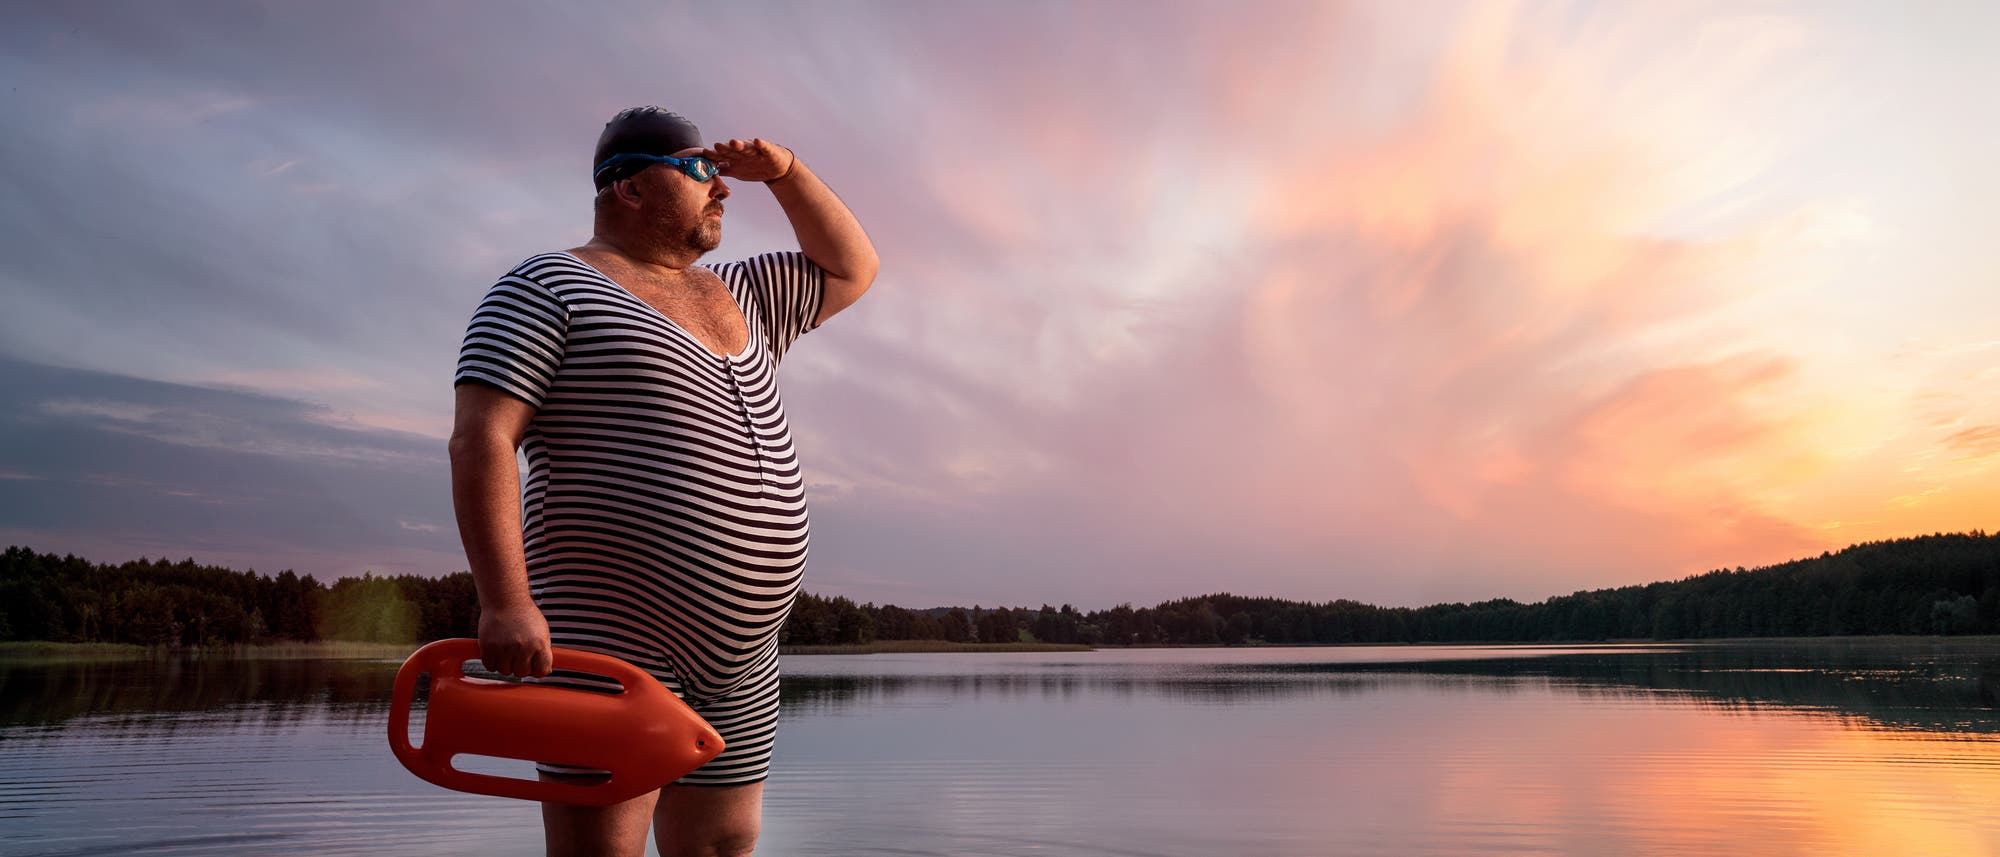 Ein etwas älterer, wohlbeleibter Rettungsschwimmer in gestreiftem Badeanzug steht bei Sonnenuntergang im Wasser eines Sees.